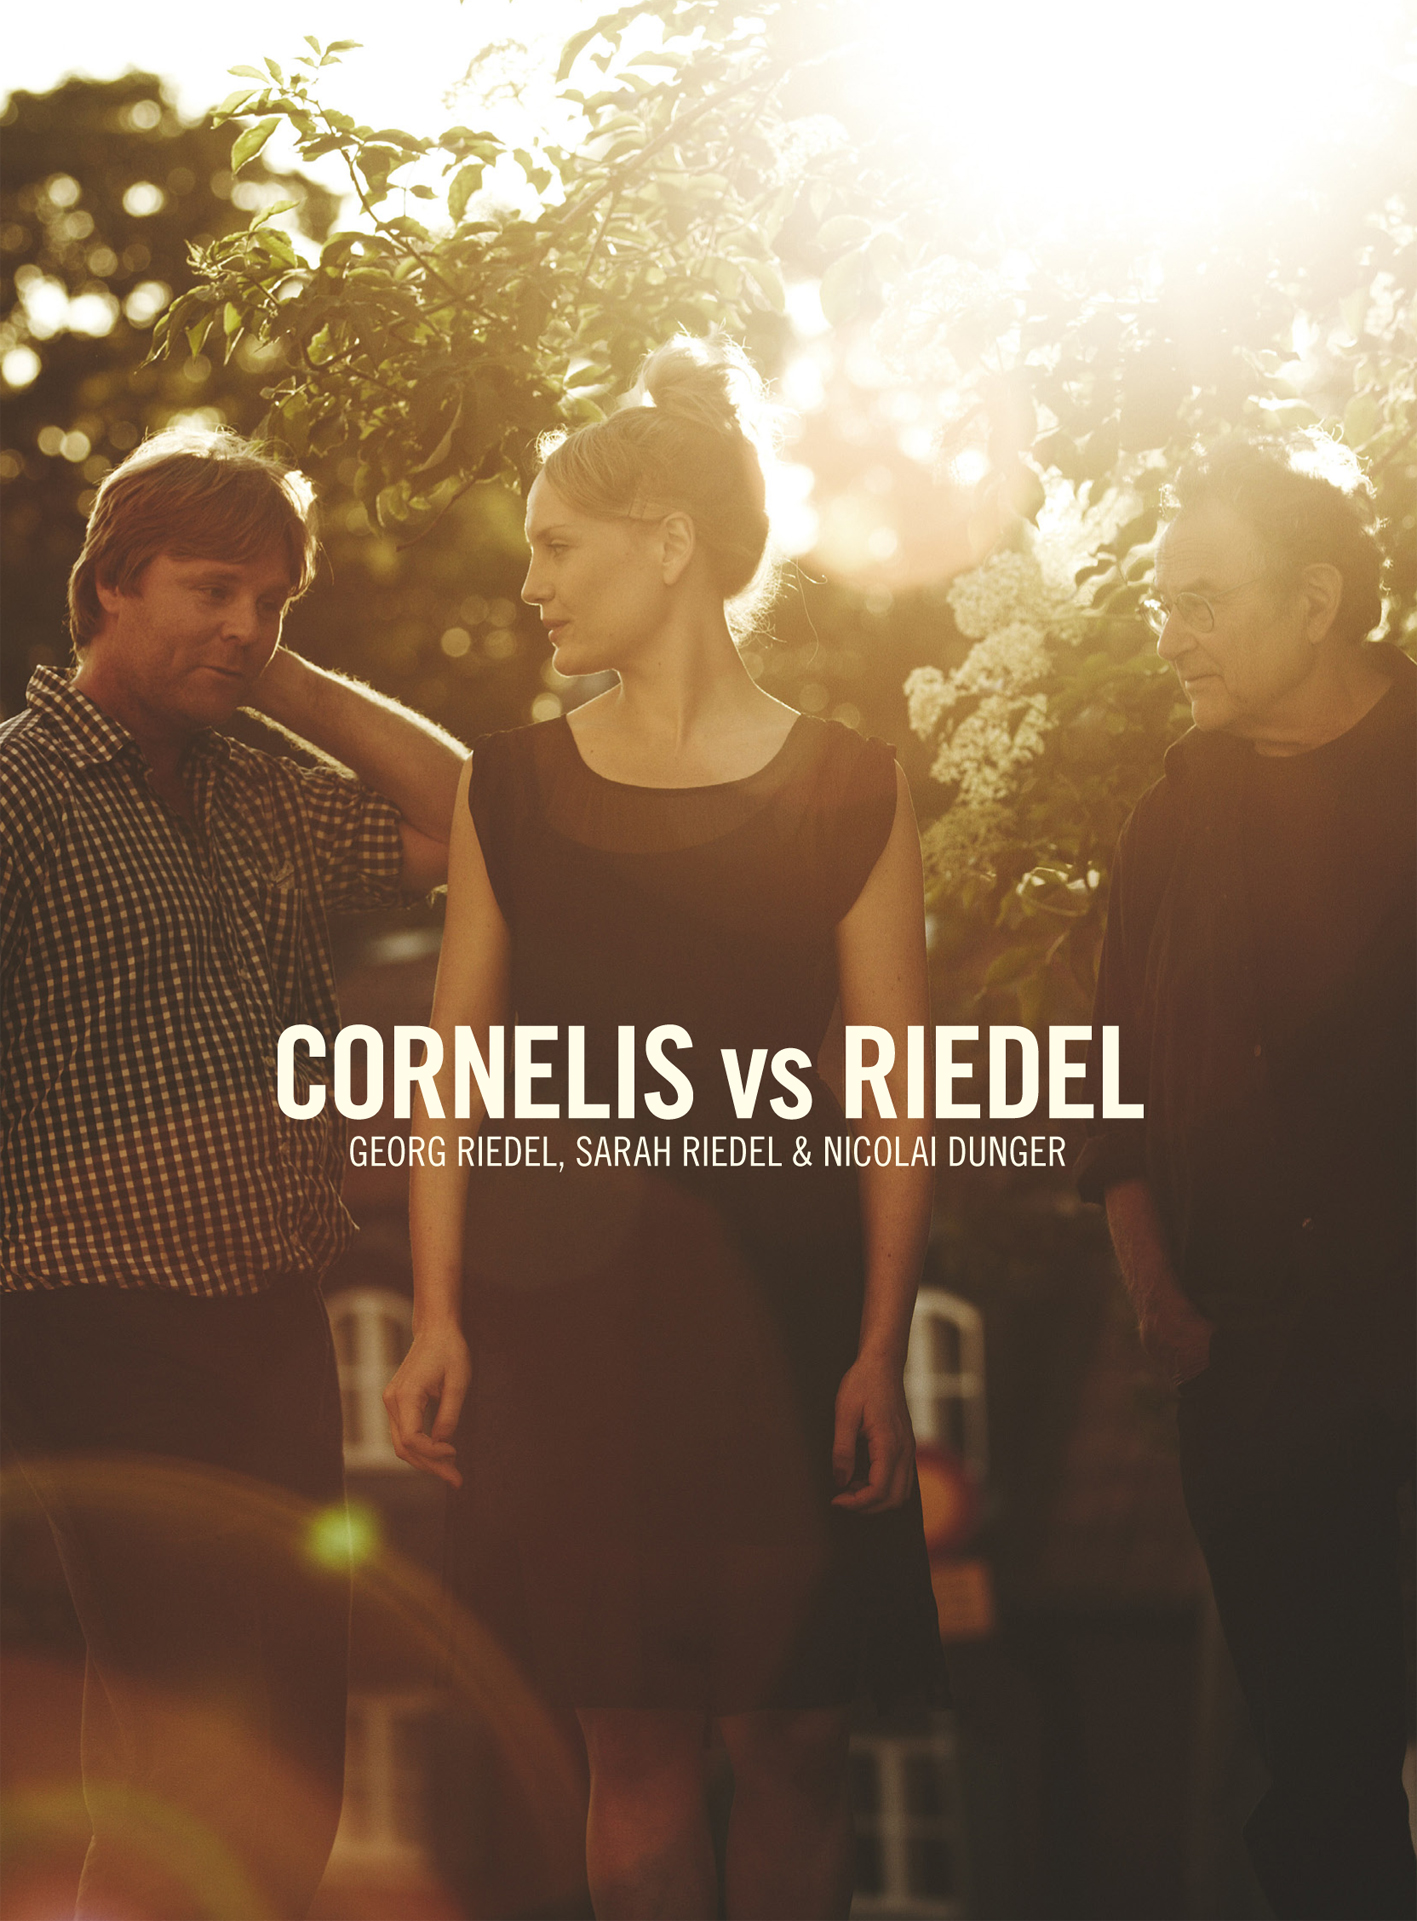 Georg Riedel, Sarah Riedel & Nicolai Dunger - Cornelis vs Riedel - CD+Book